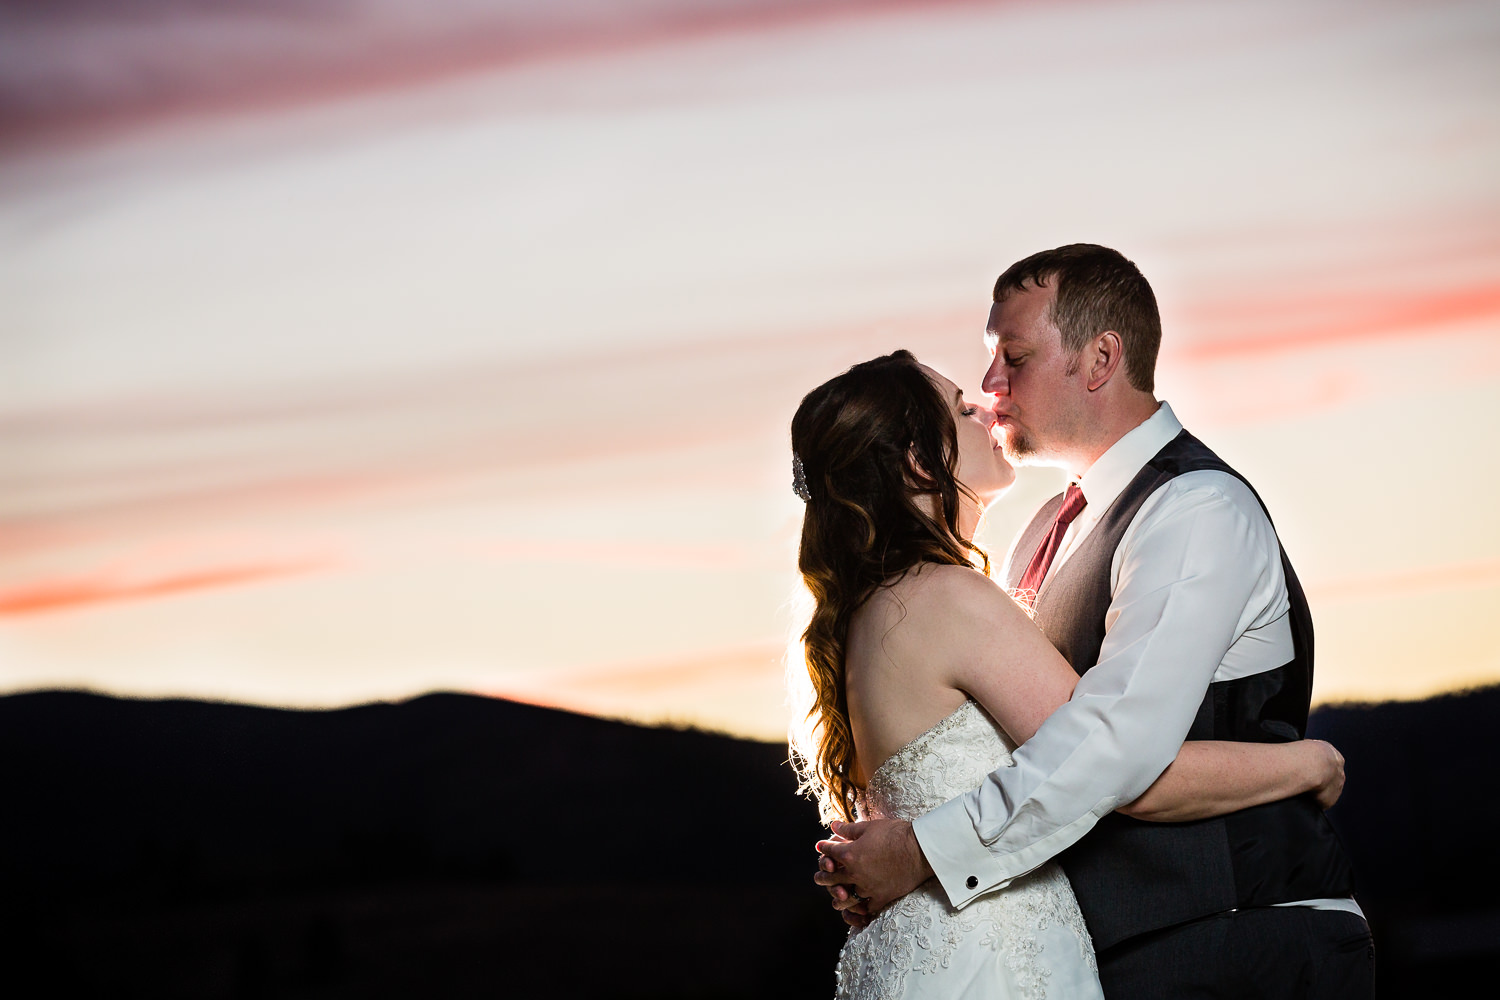 heritage-hall-missoula-montana-bride-groom-sunset-kiss.jpg